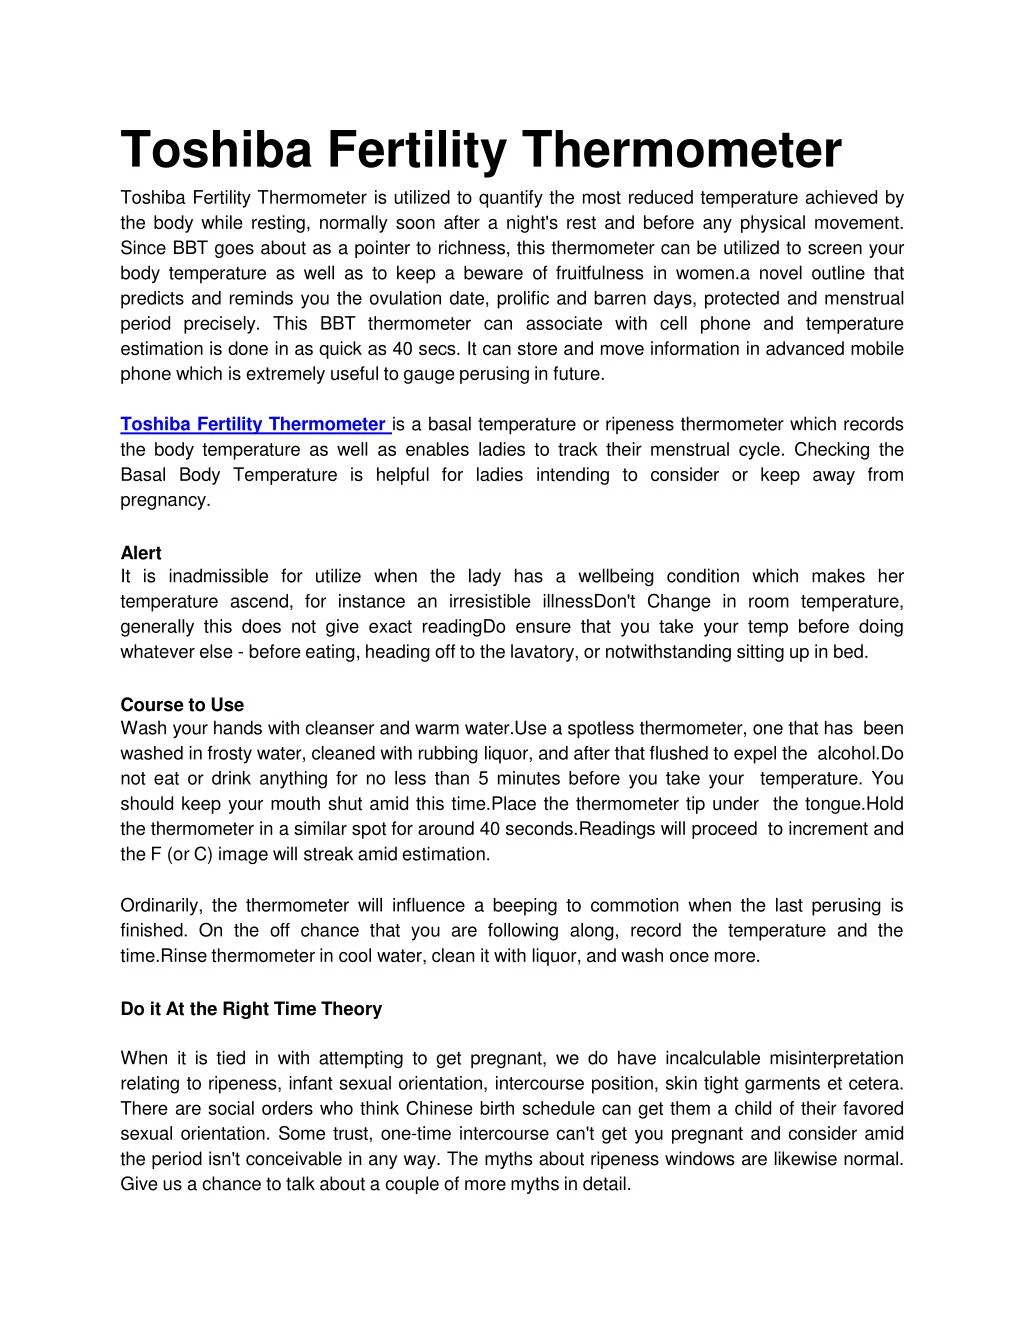 toshiba fertility thermometer toshiba fertility